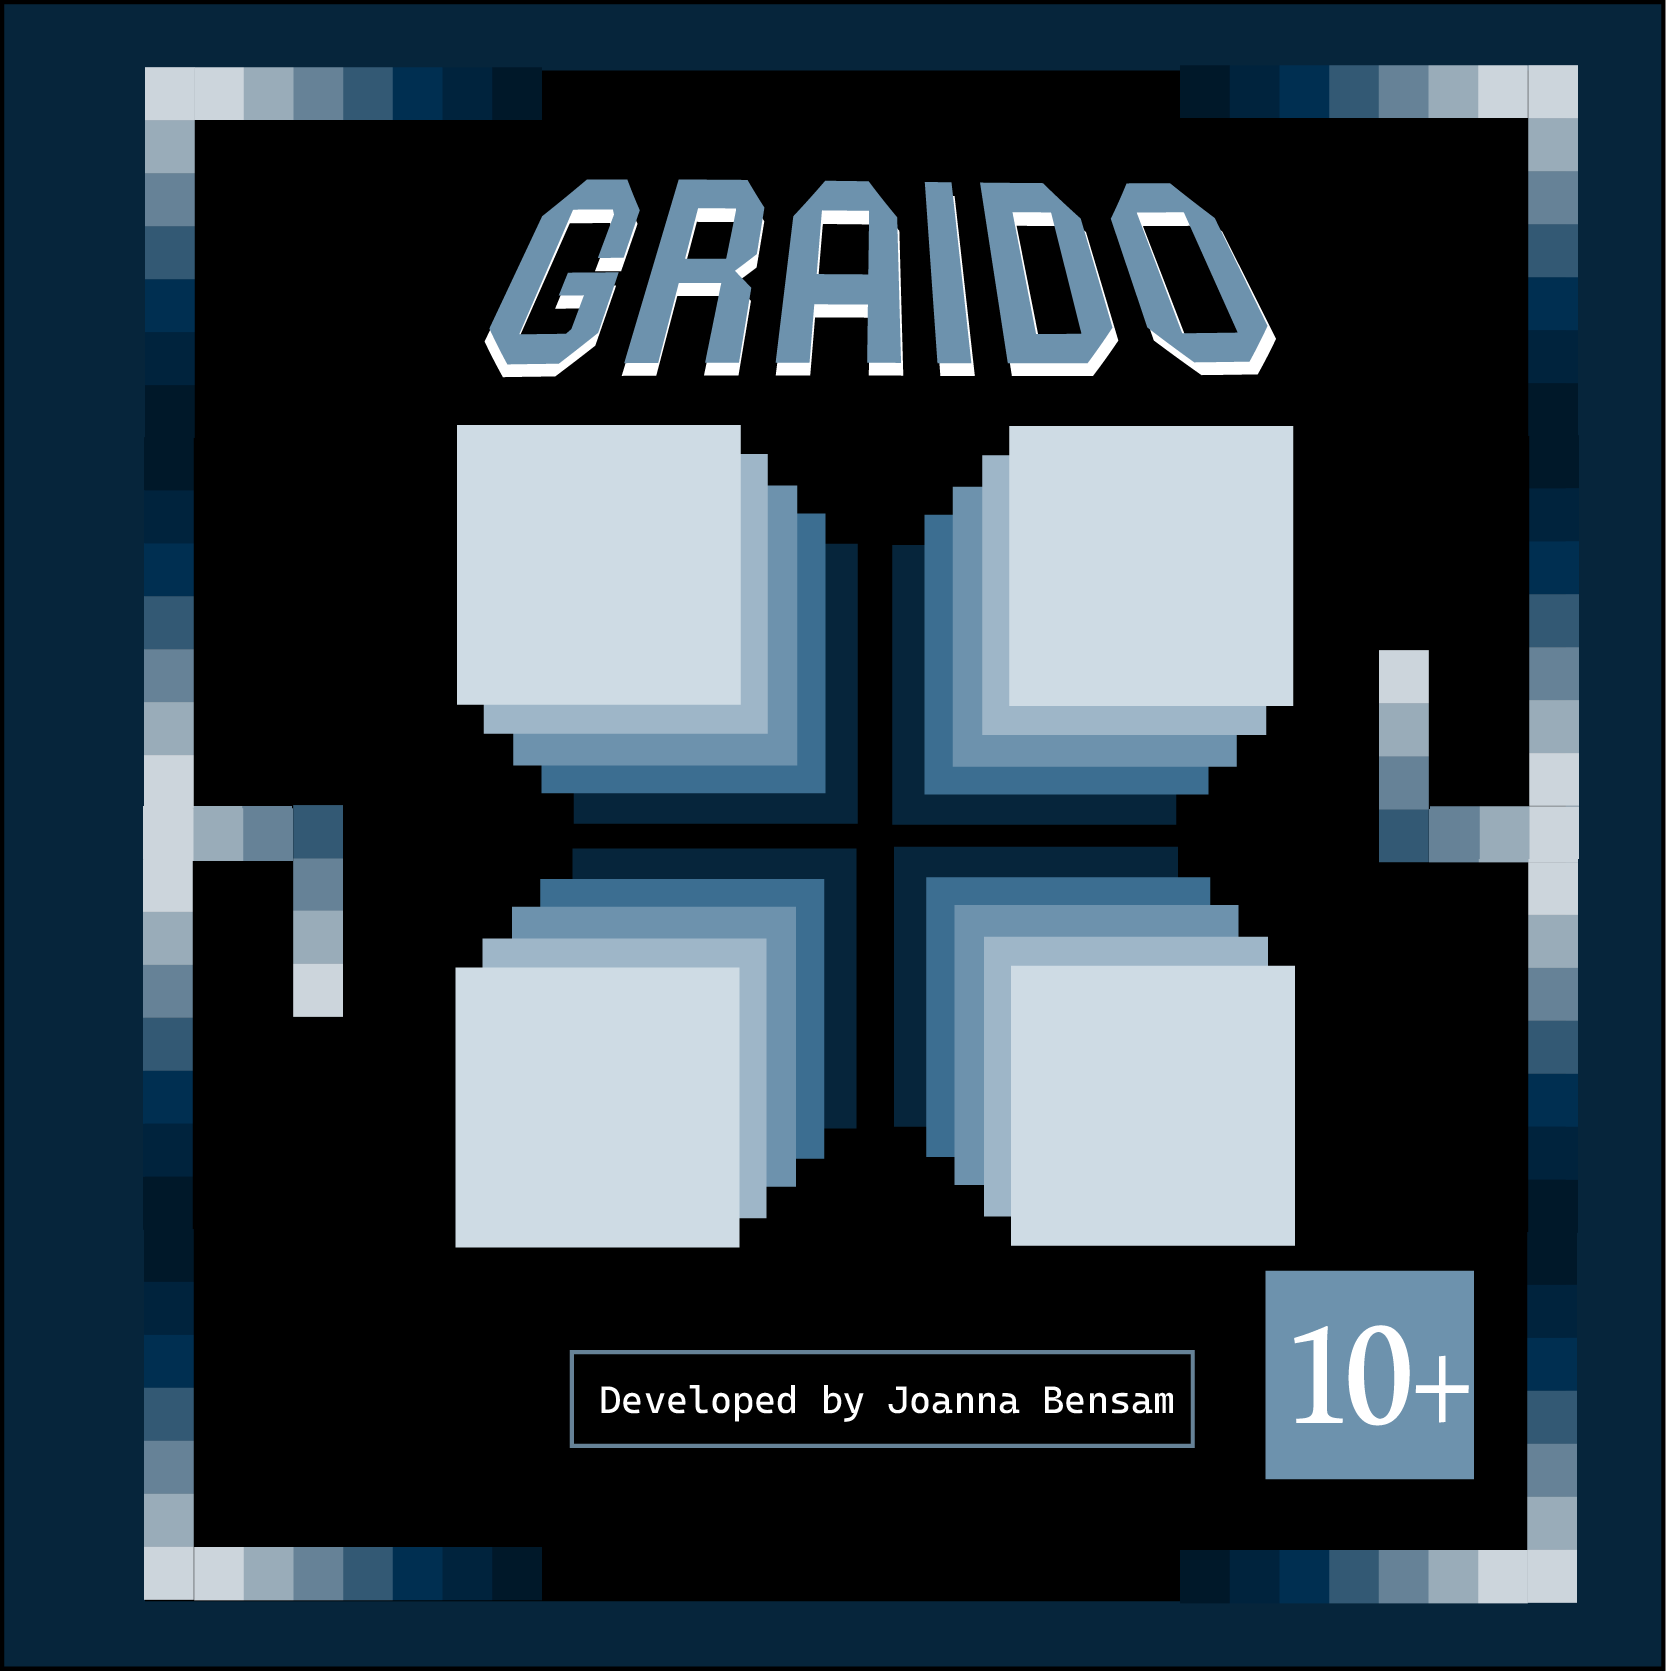 Graido